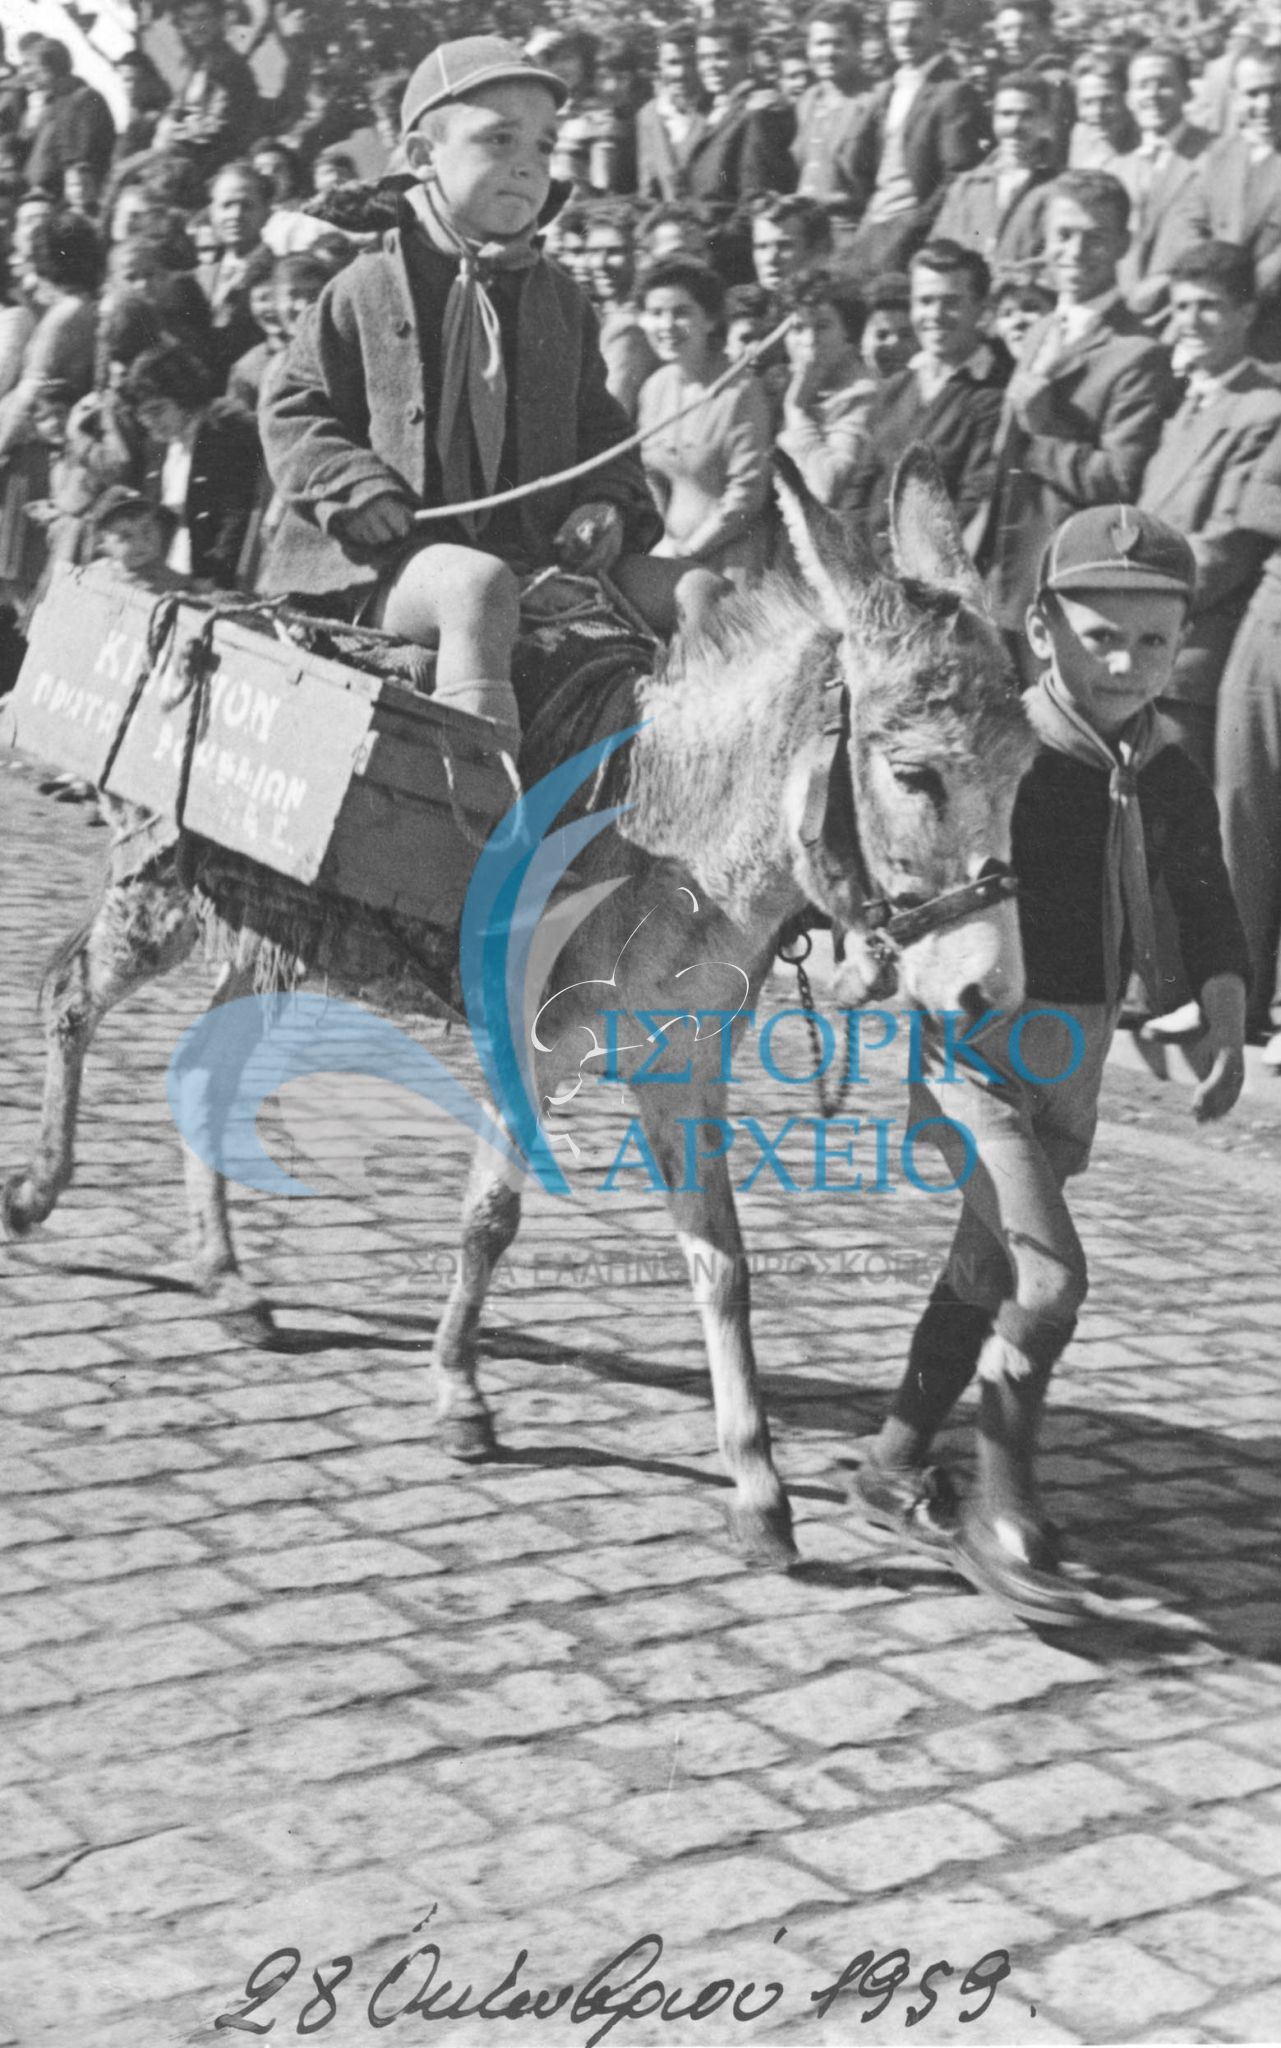 Τα λυκόπουλα του Σουφλίου στην παρέλαση της 28ης Οκτωβρίου 1959 με τα δικά τους μεταφορικά μέσα.